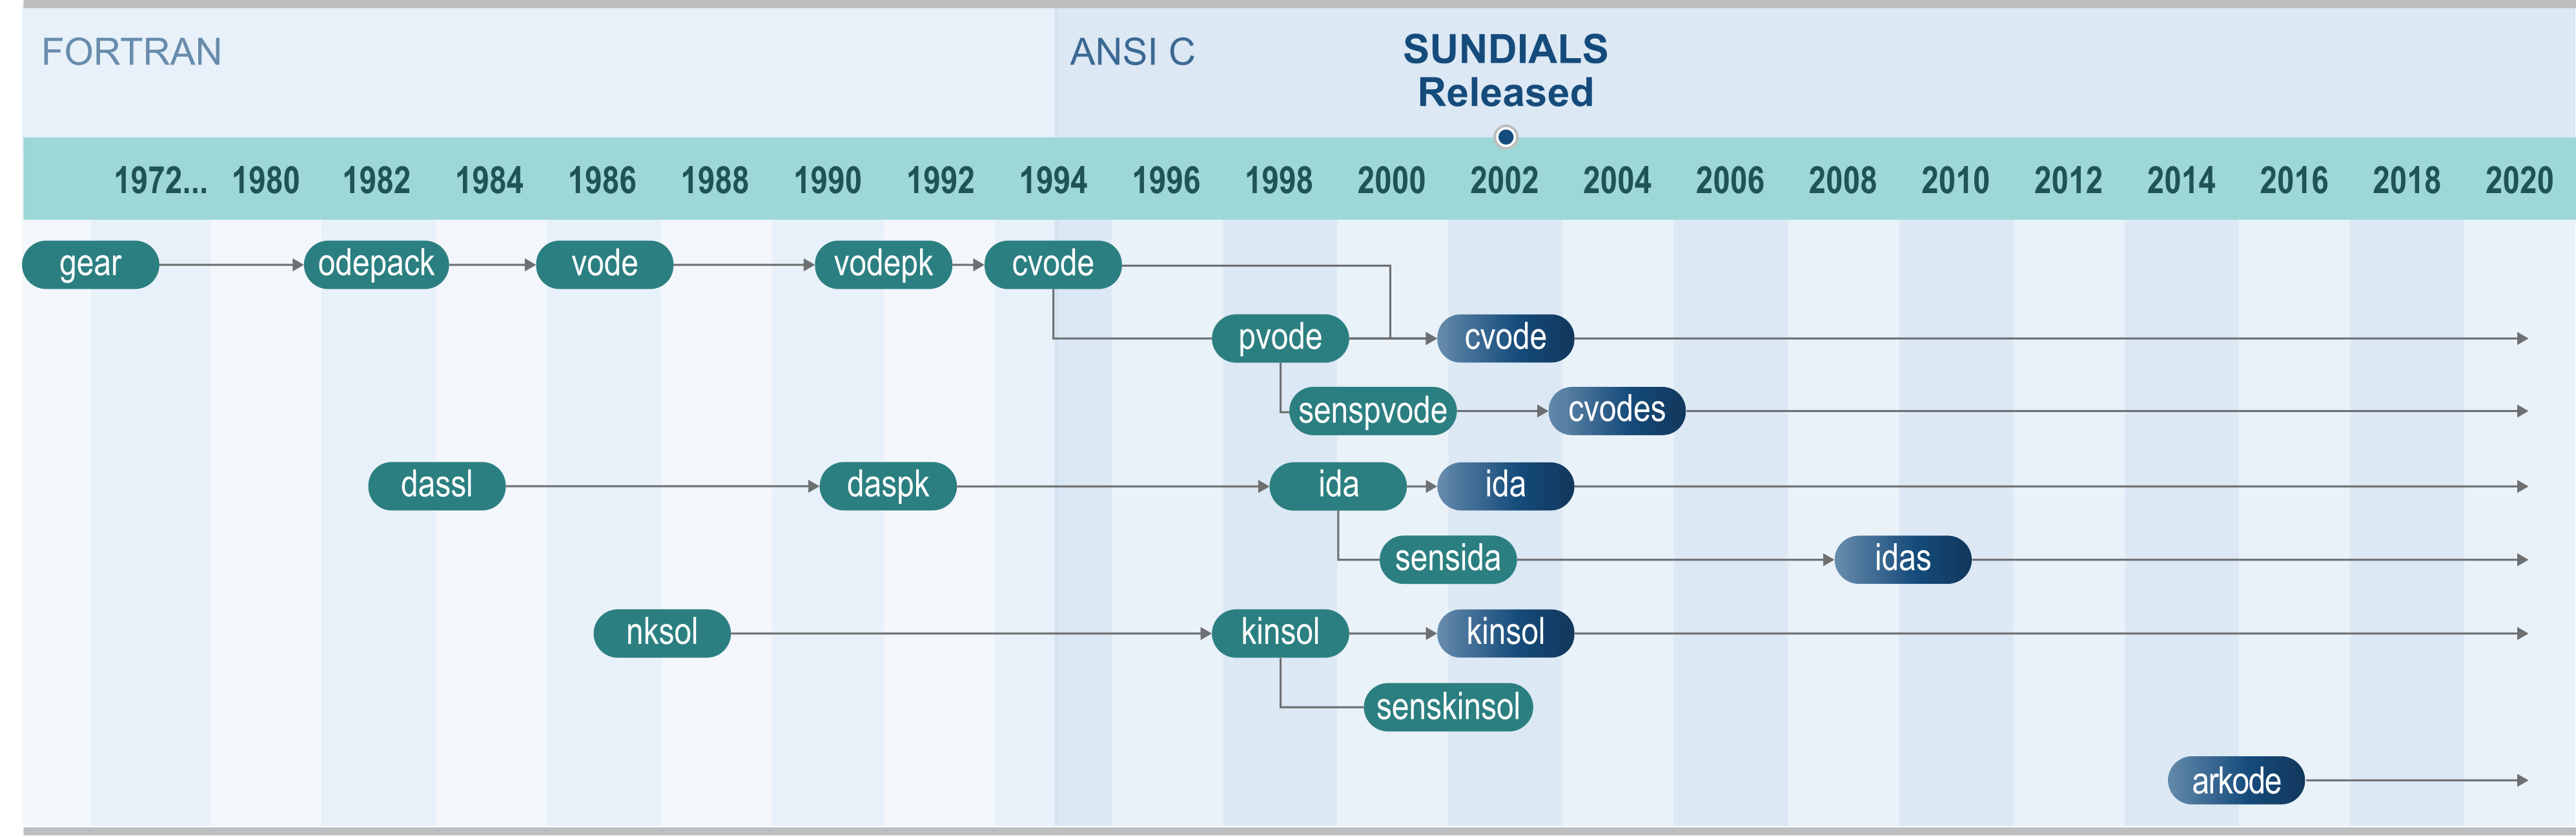 ../_images/sundials-timeline-2020.png